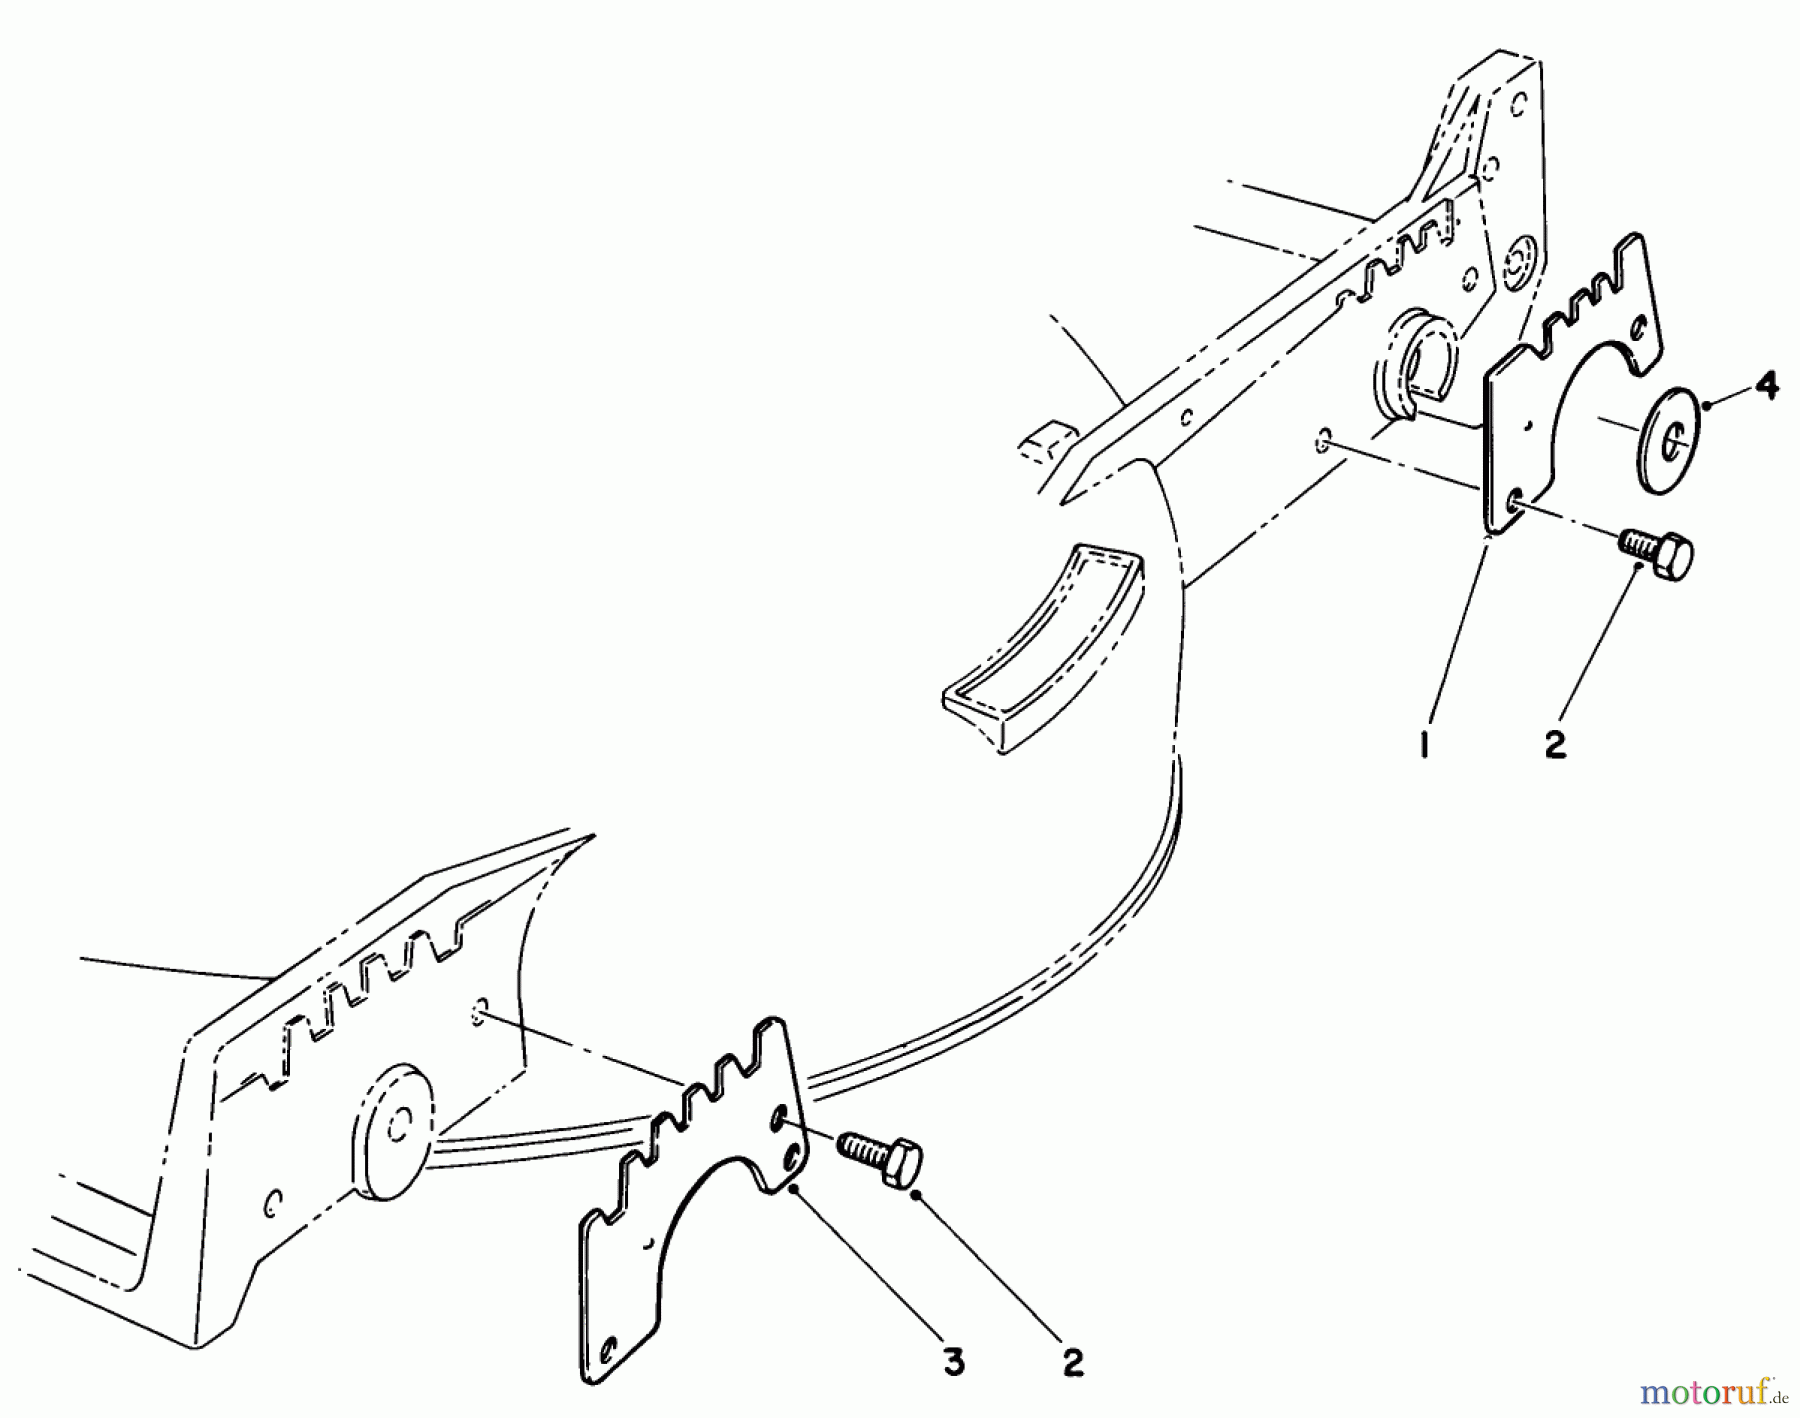  Toro Neu Mowers, Walk-Behind Seite 1 20570 - Toro Lawnmower, 1984 (4000001-4999999) WEAR PLATE KIT NO. 49-4080 (OPTIONAL)